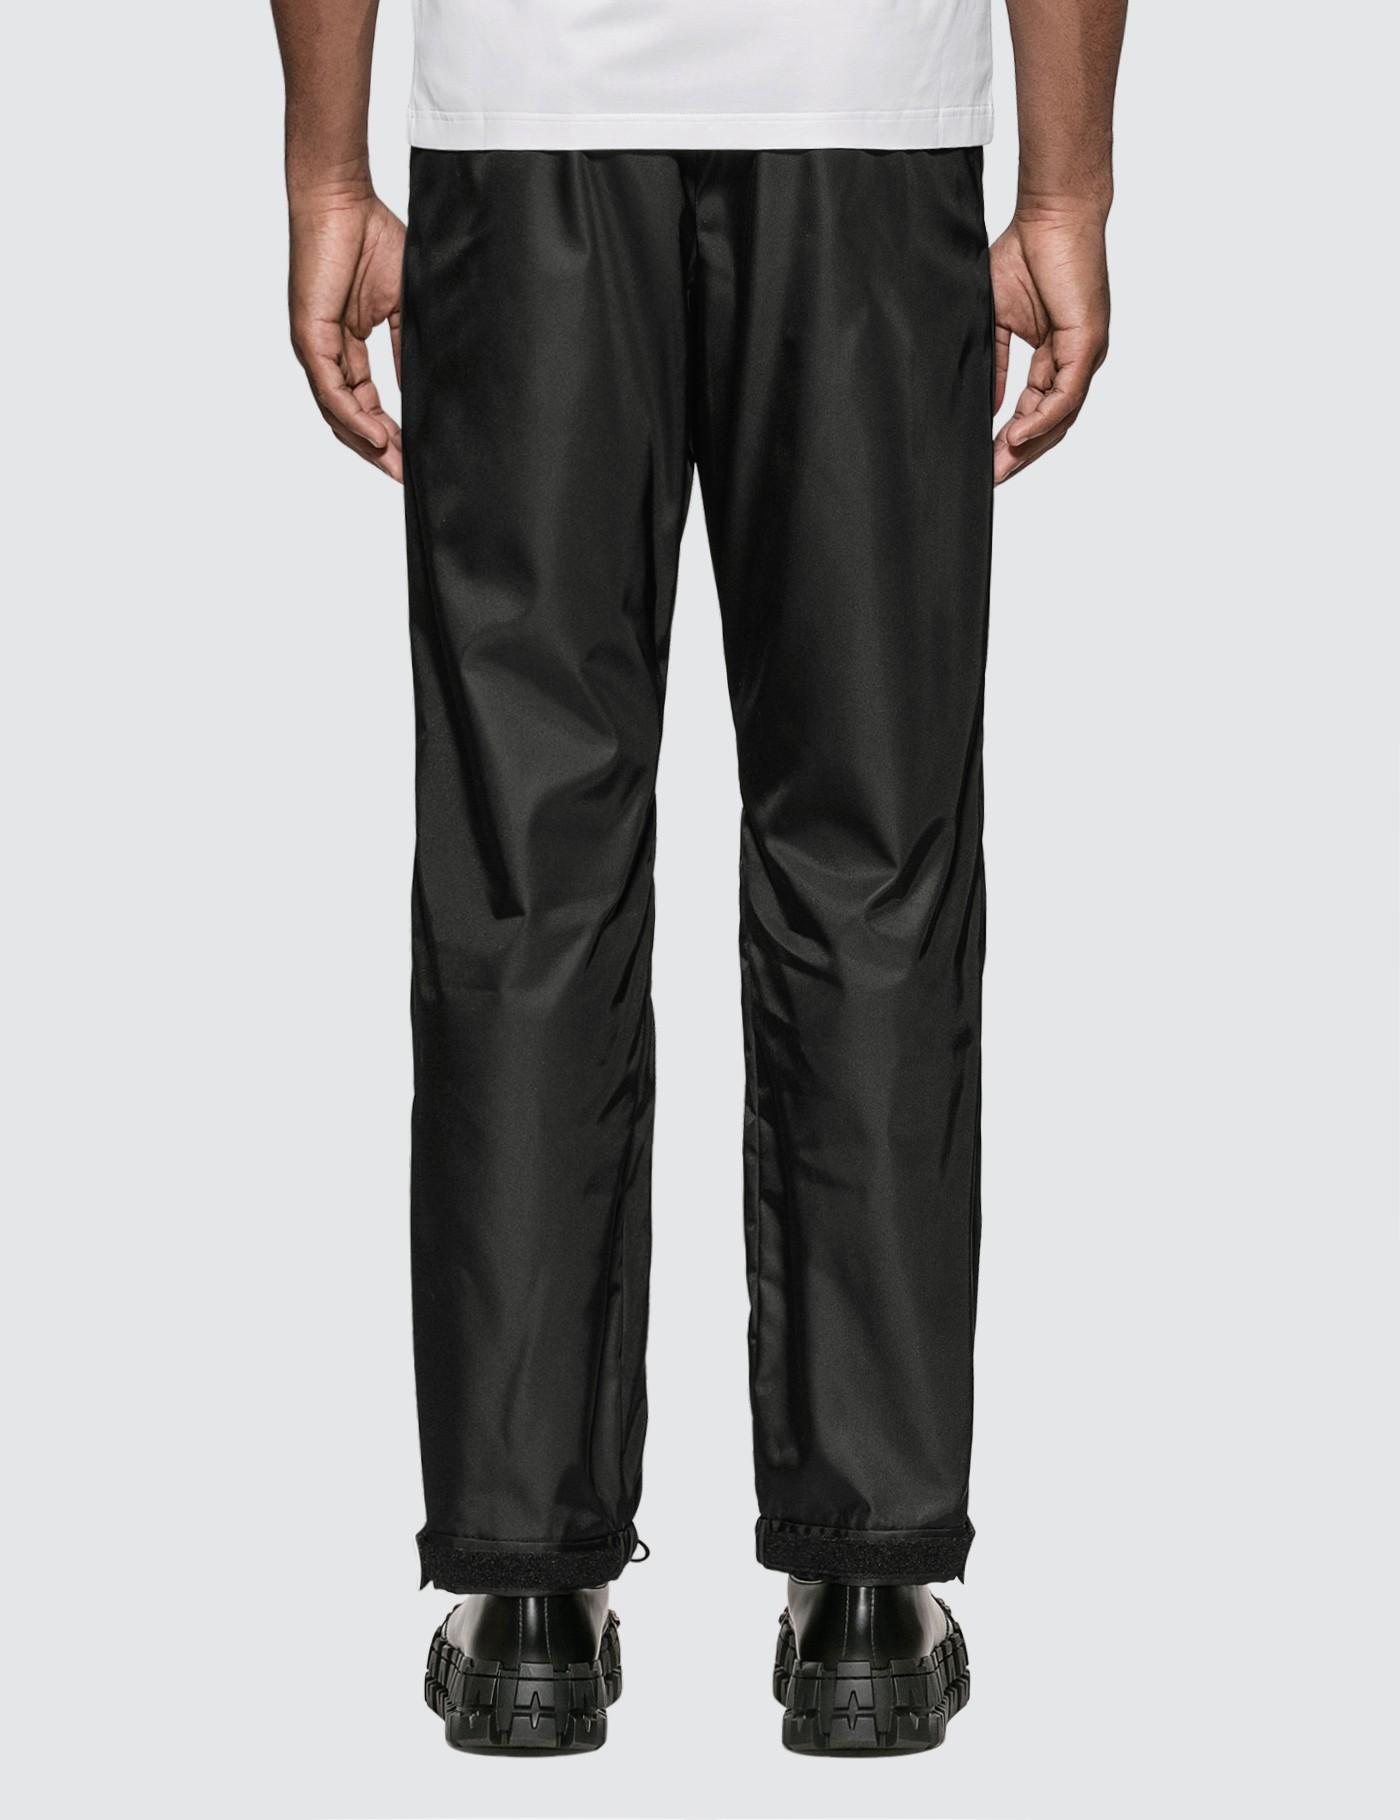 Prada Synthetic Gabardine Nylon Track Pants in Black for Men - Lyst